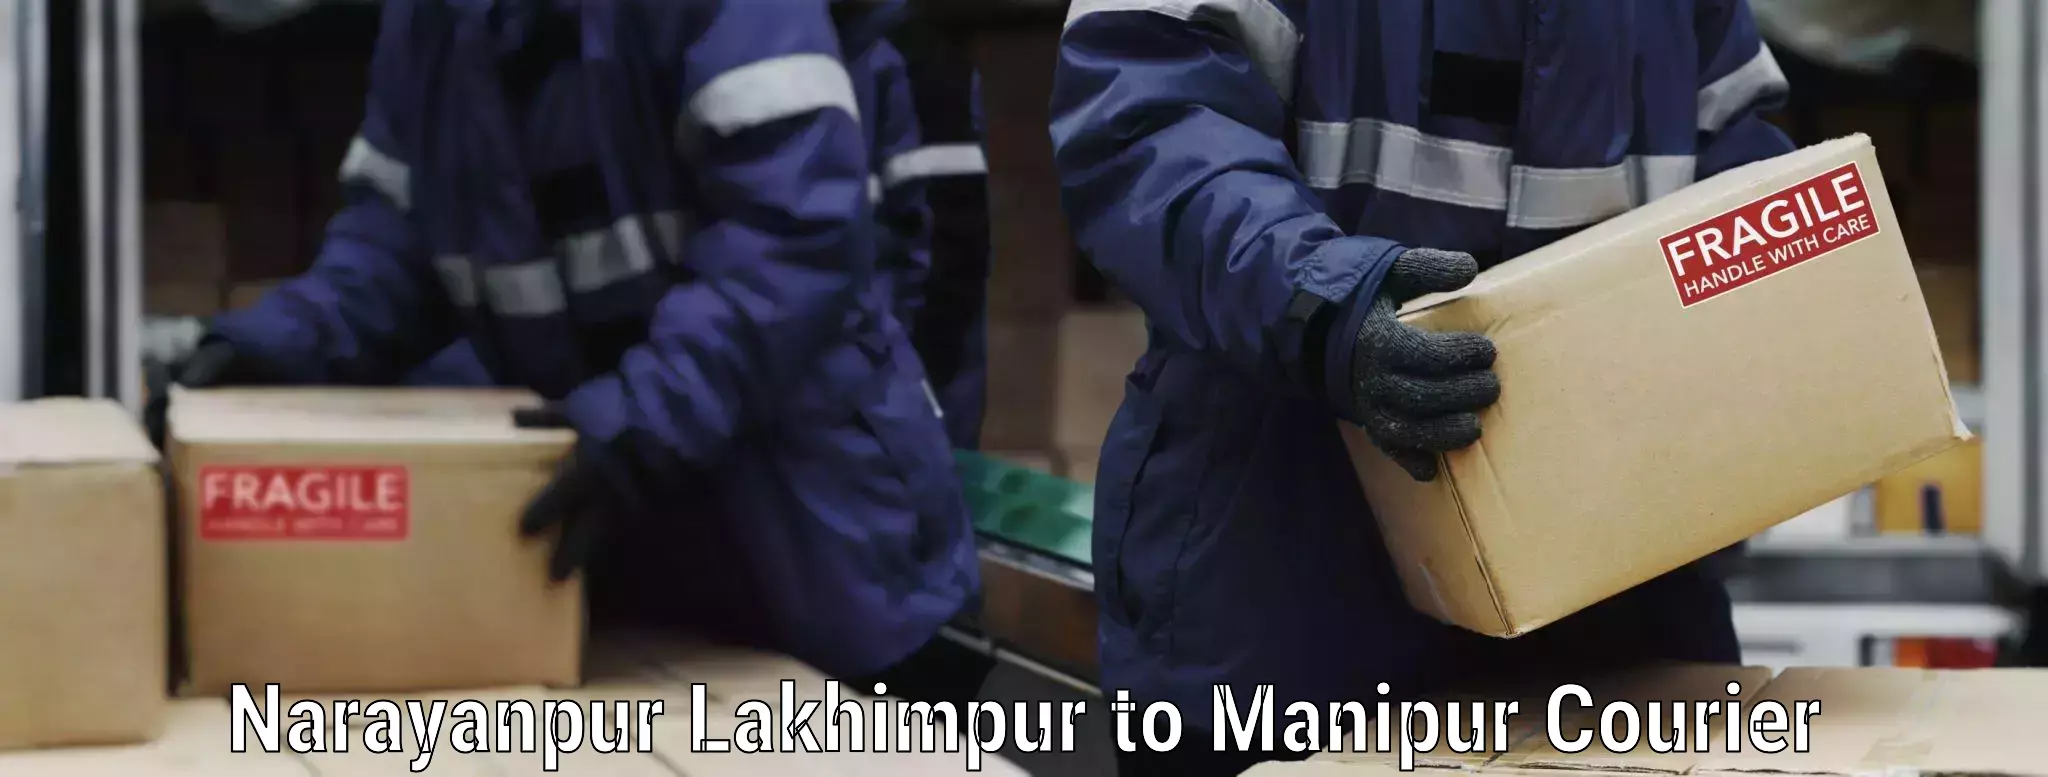 Safe furniture transport Narayanpur Lakhimpur to Kanti